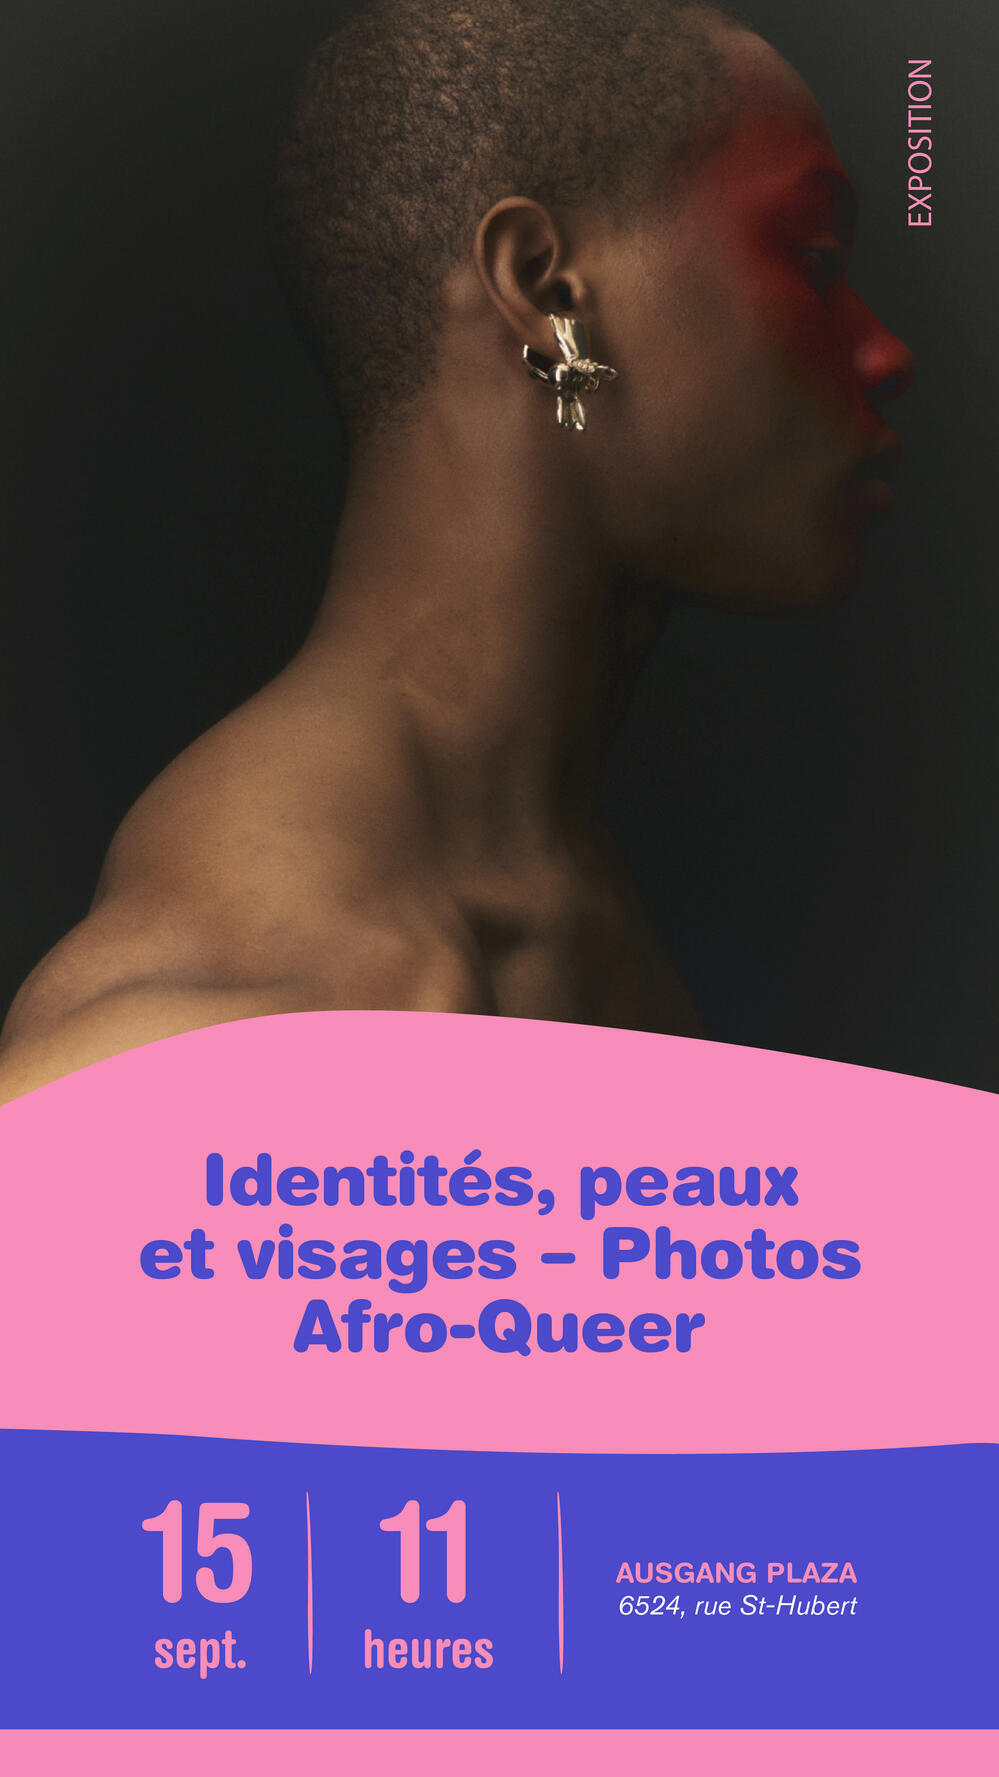 Identités, peaux et visages - un regard photographique sur les identités Afro-Queer